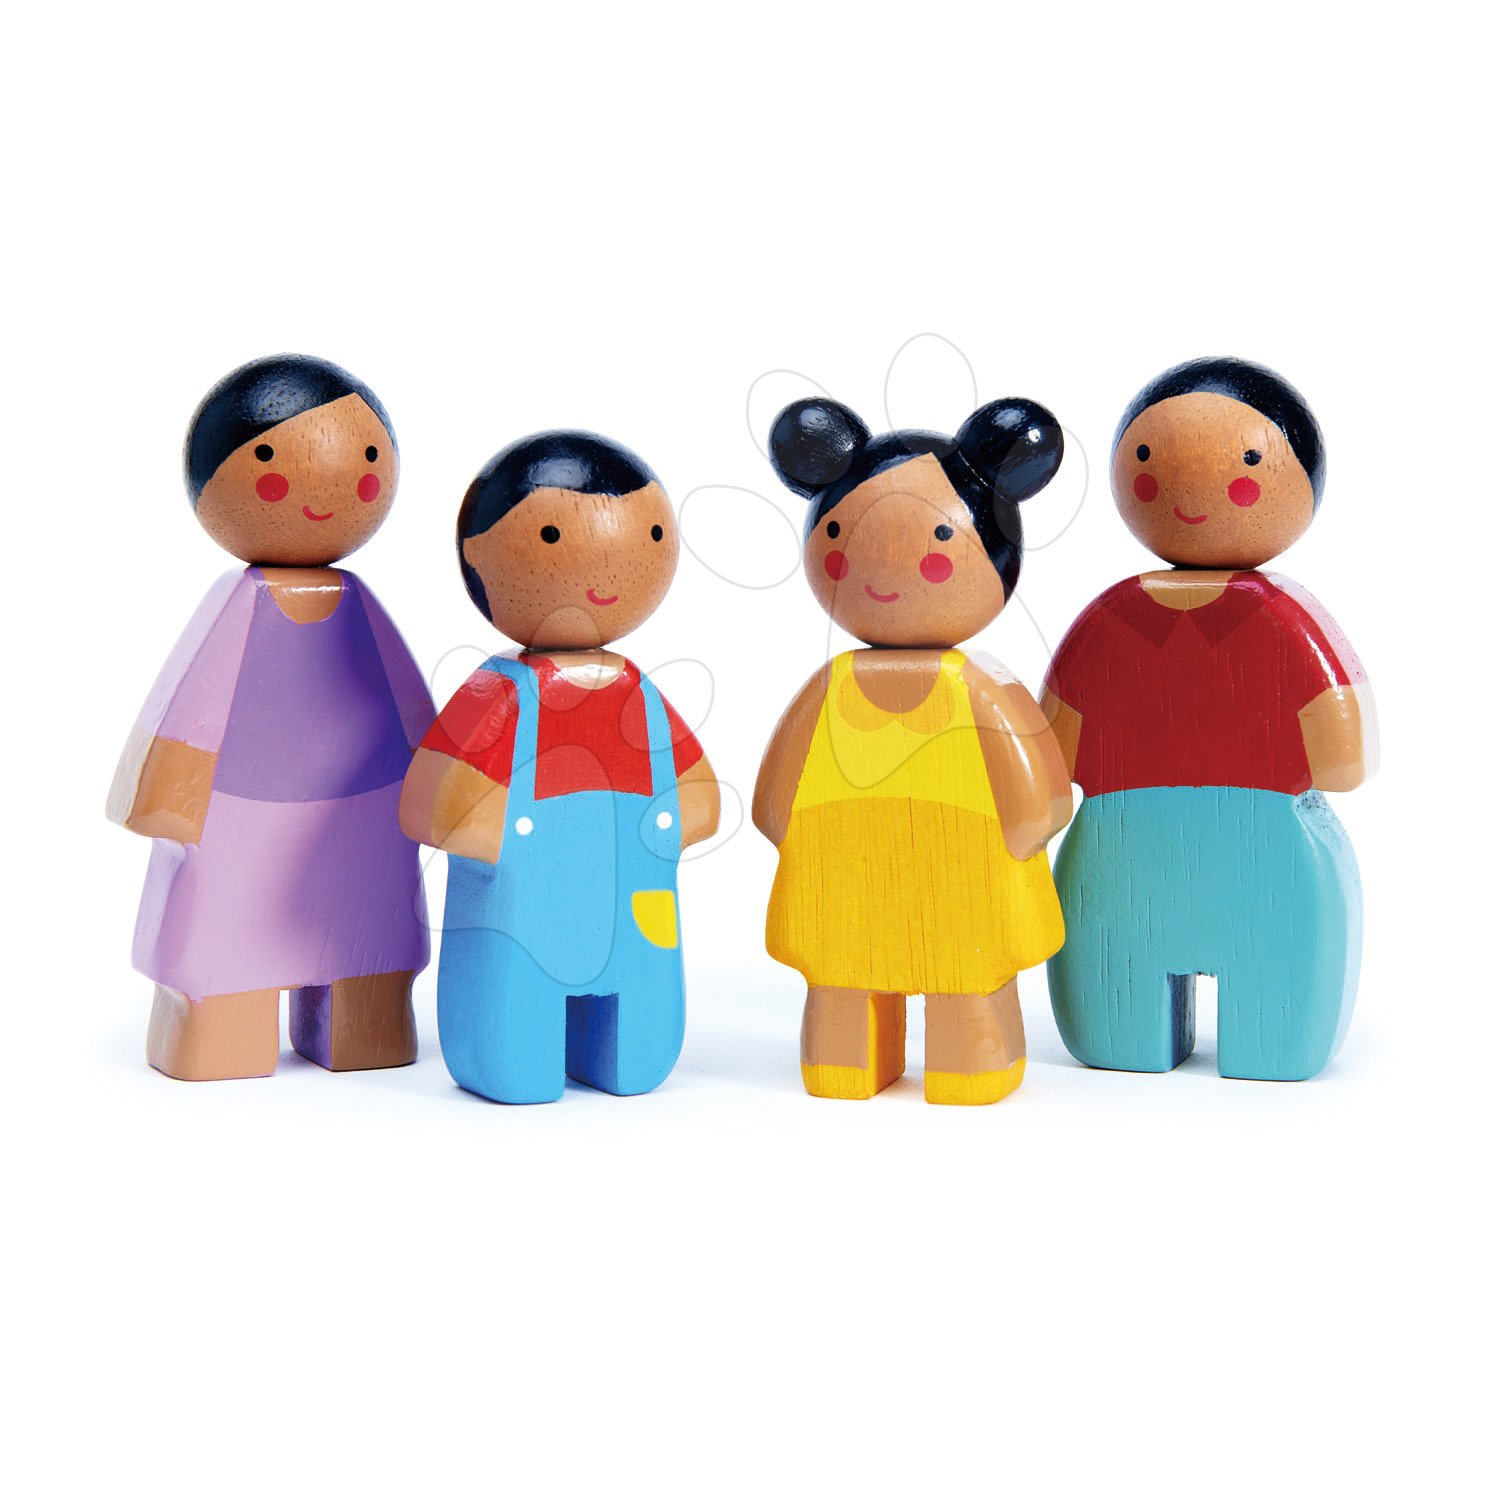 Fa figurák Sunny család Doll Family Tender Leaf Toys anya apa és 2 gyerek